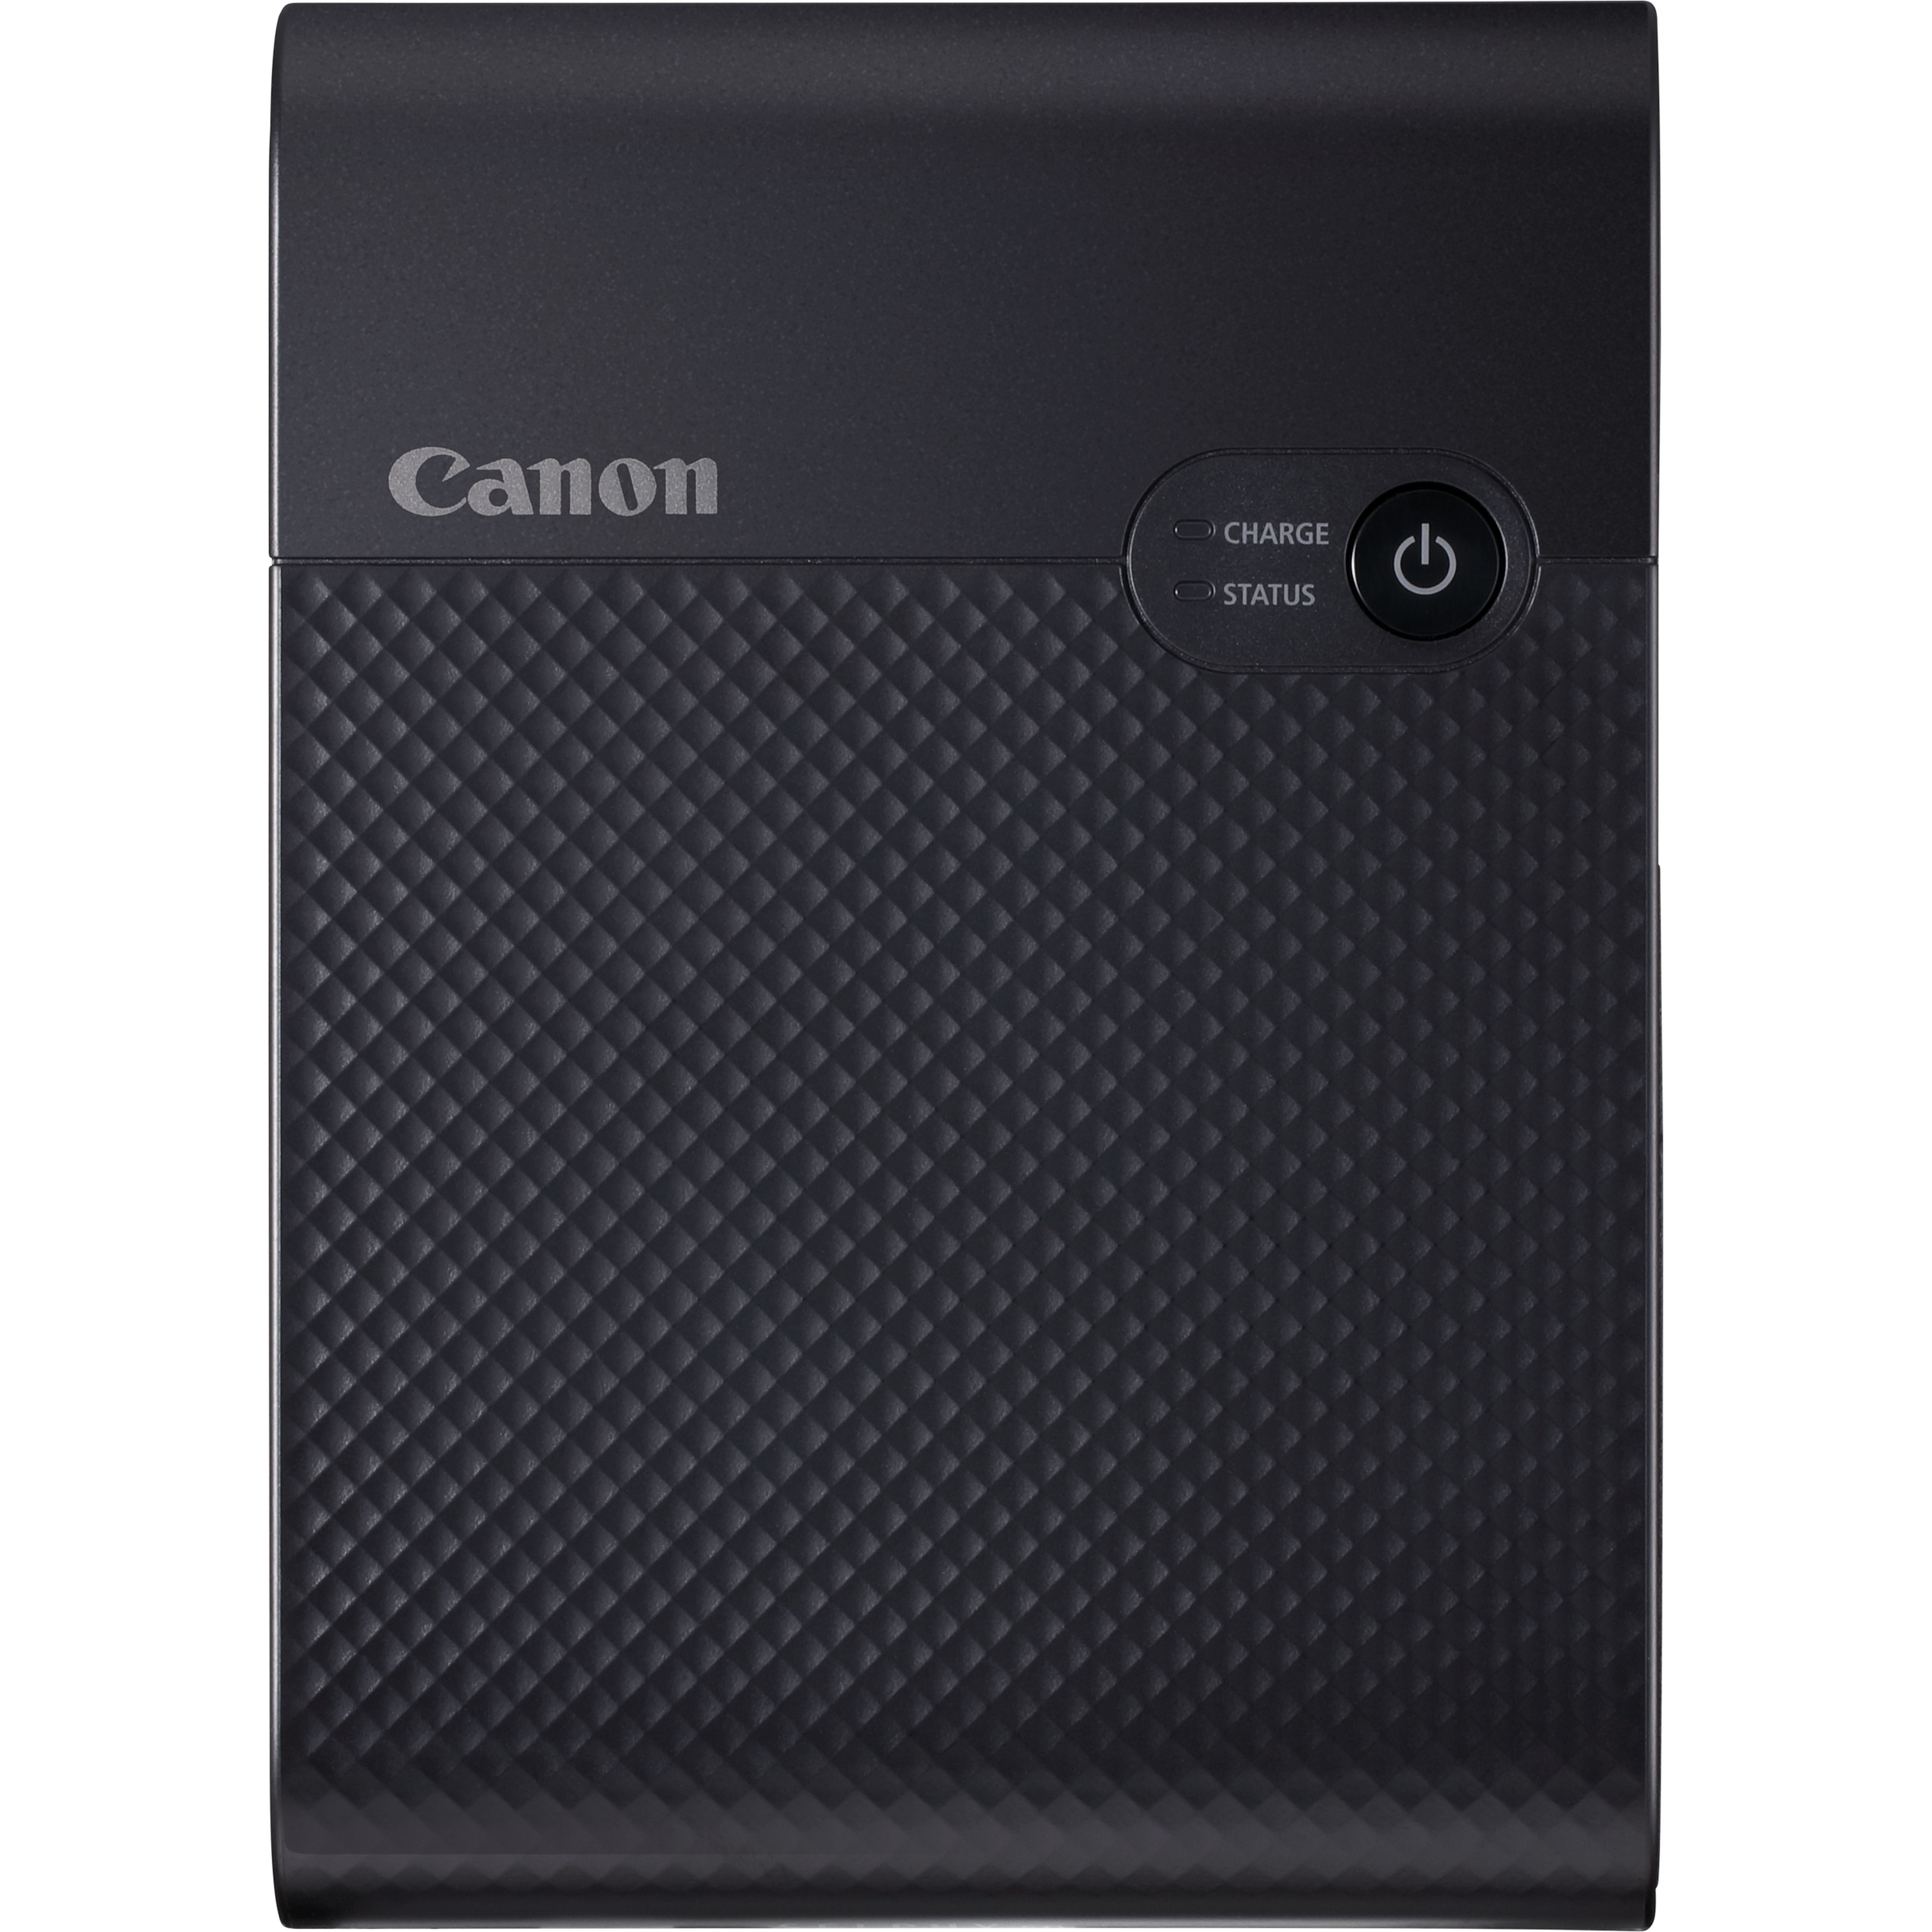 Image of Canon SELPHY Stampante fotografica portatile wireless a colori SQUARE QX10, nero